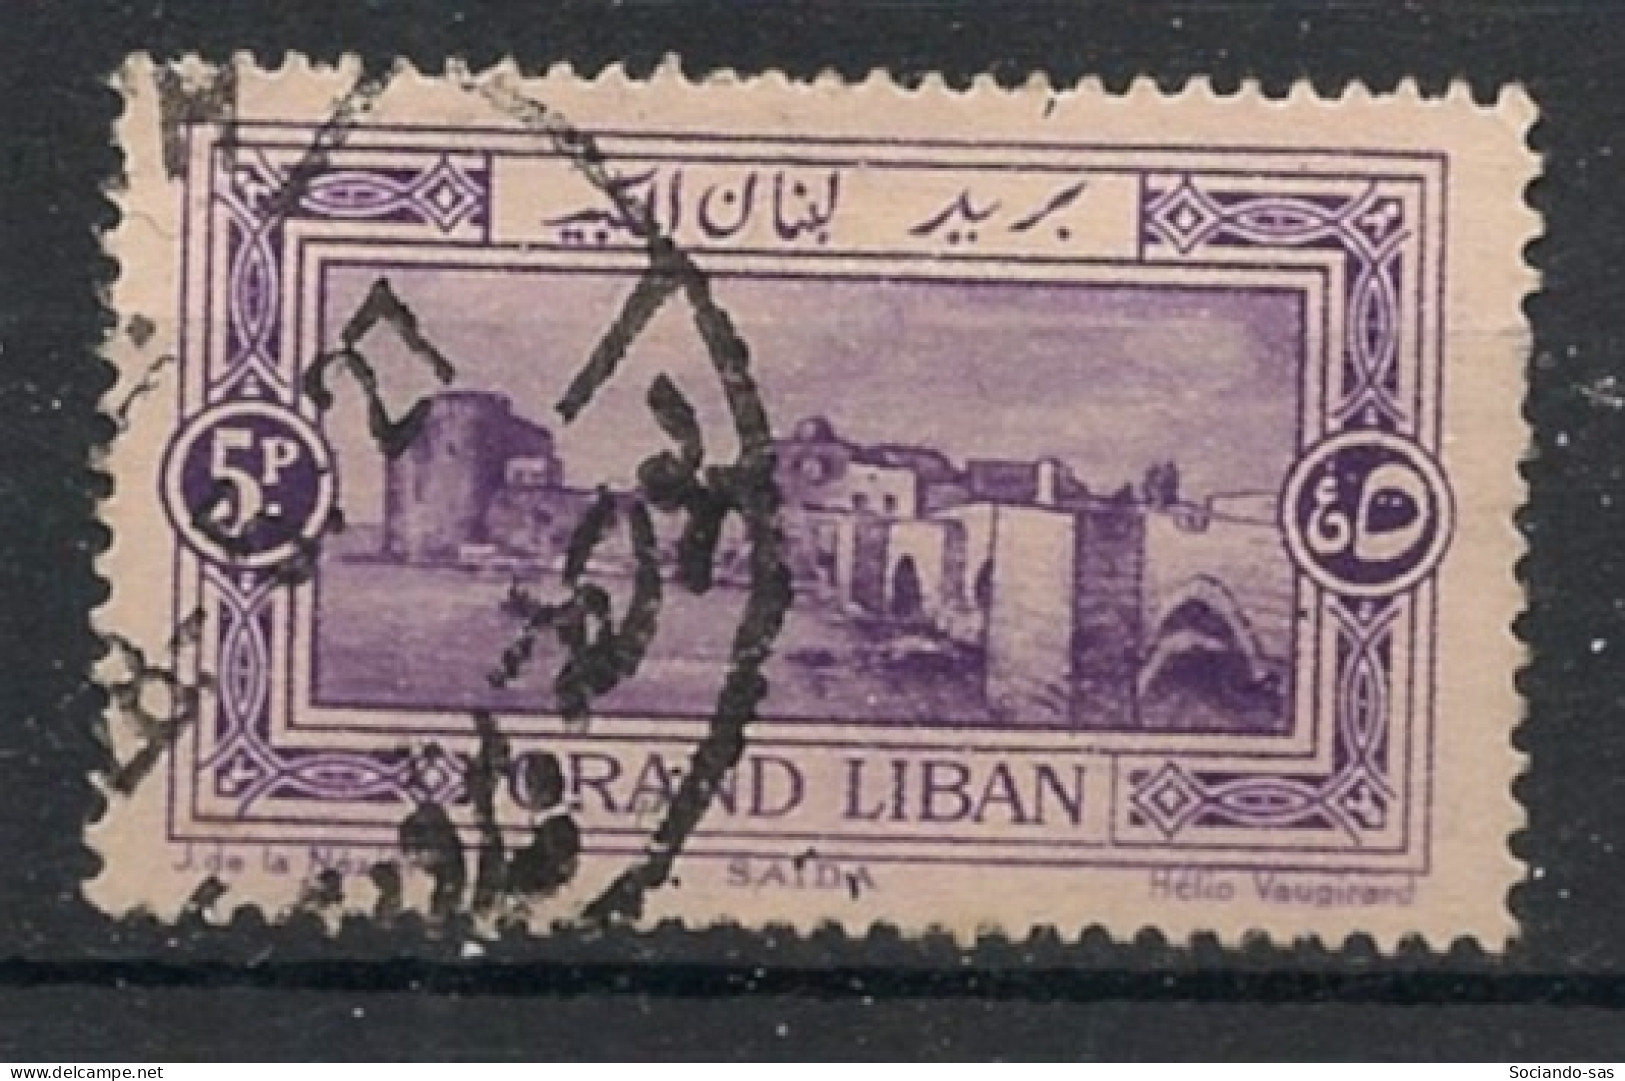 GRAND LIBAN - 1925 - N°YT. 60 - Saida 5pi Violet - Oblitéré / Used - Used Stamps